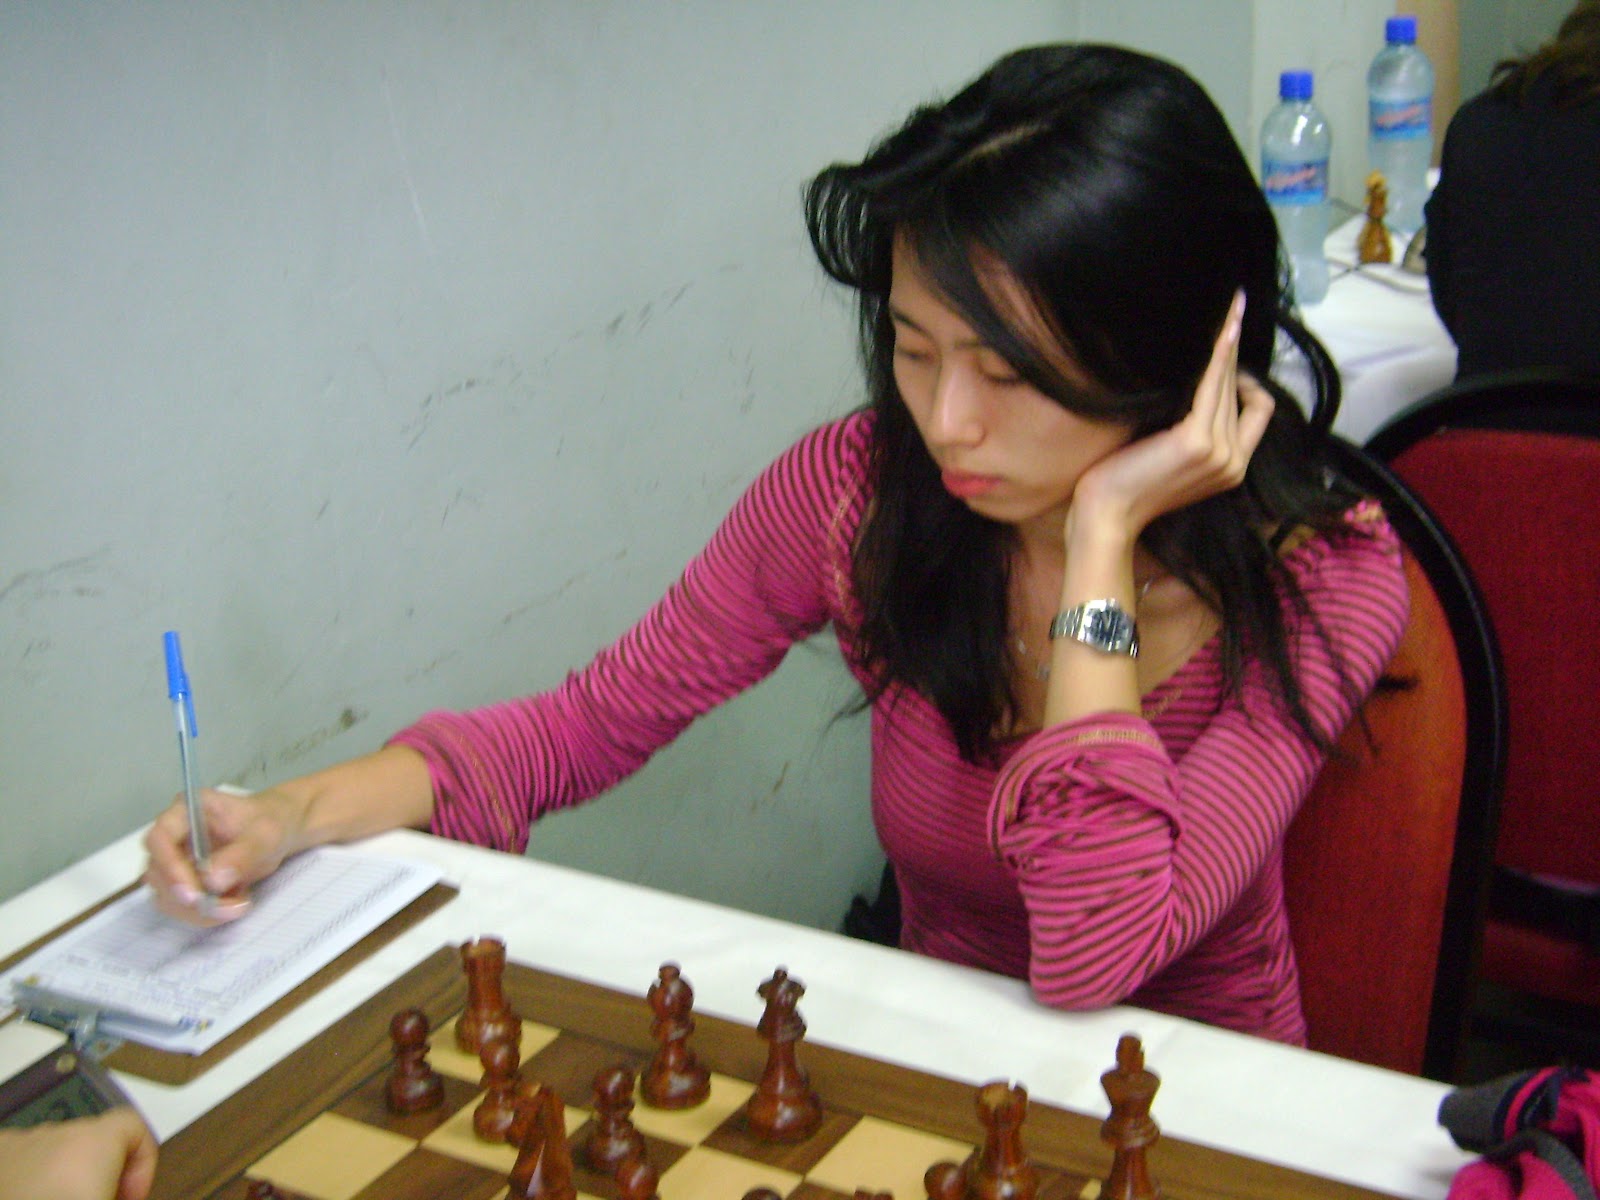 É possível deixar um MESTRE internacional de xadrez em Zugzwang em